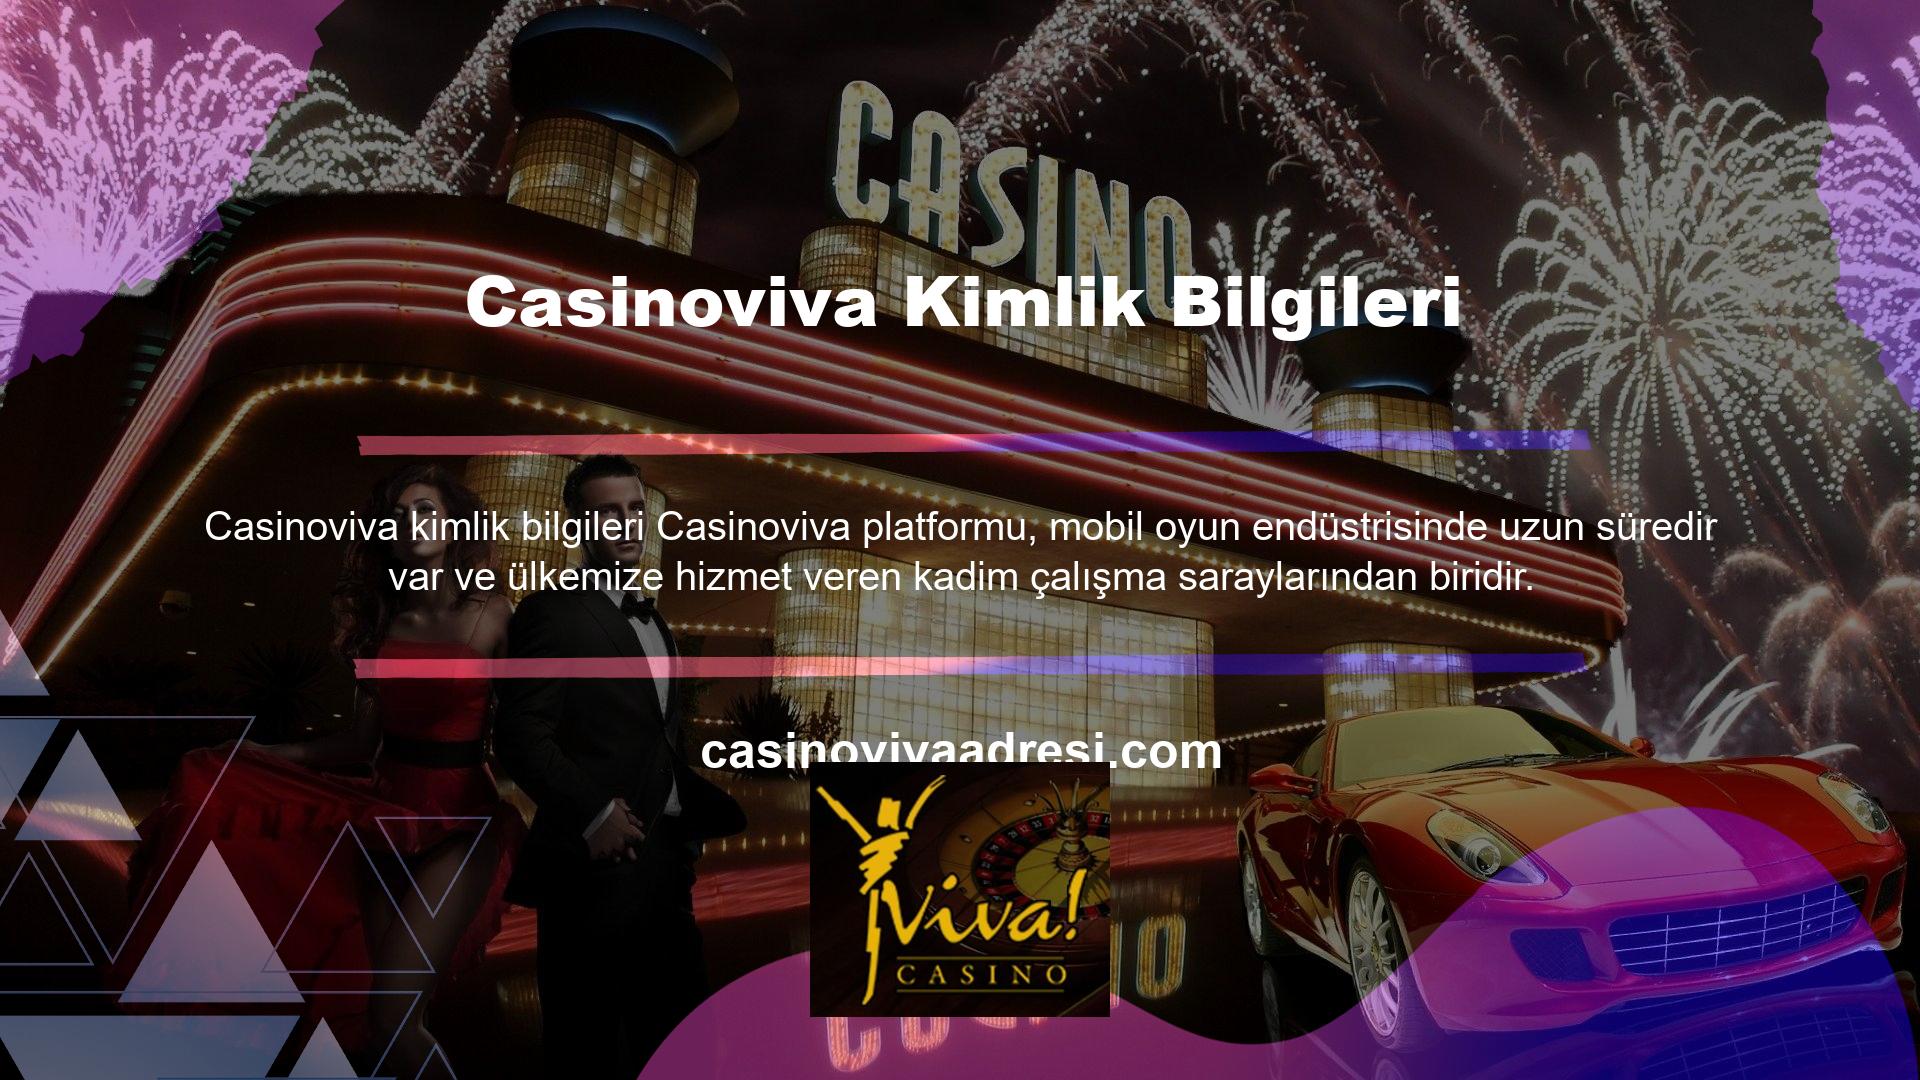 Casinoviva portal bahis sitesi, geniş bir yelpazede avantajlar sunan özel bir siteye dönüştü